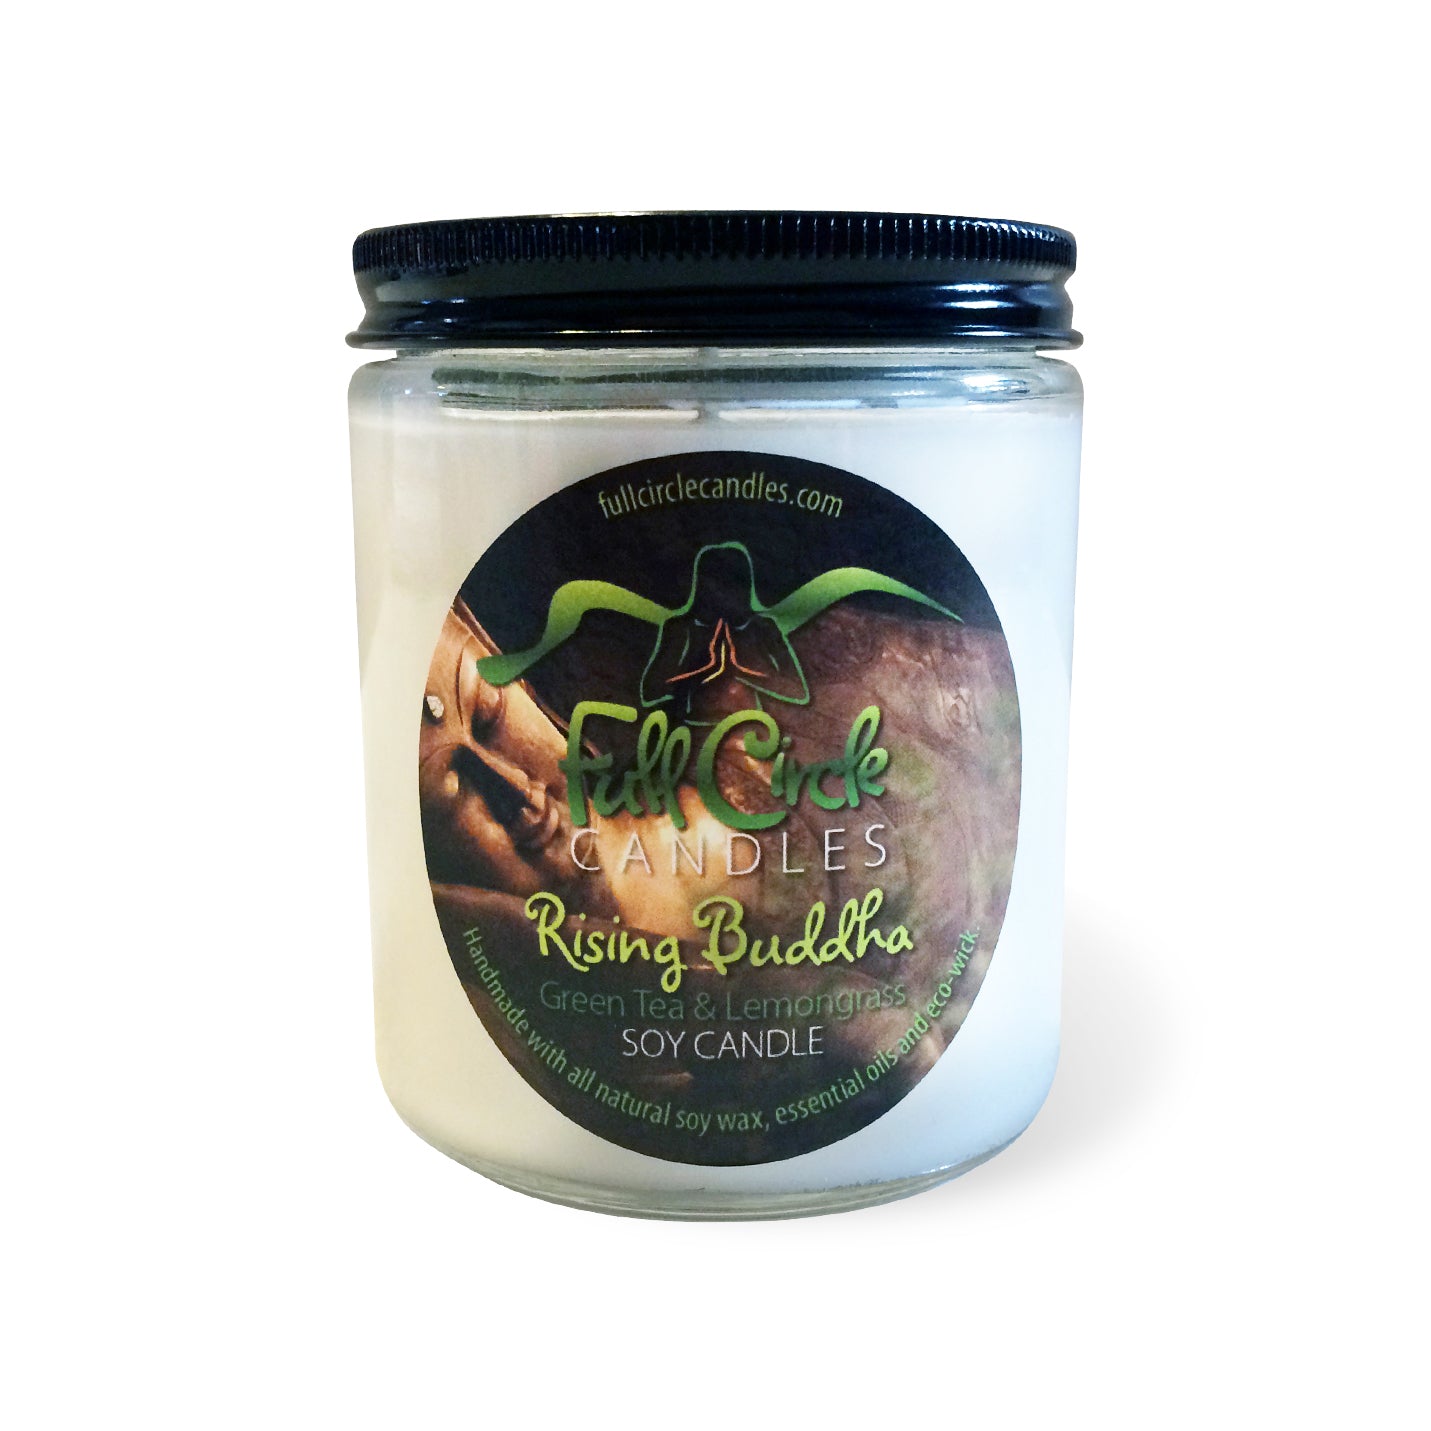 Greentea/Lemongrass  Soy Candle